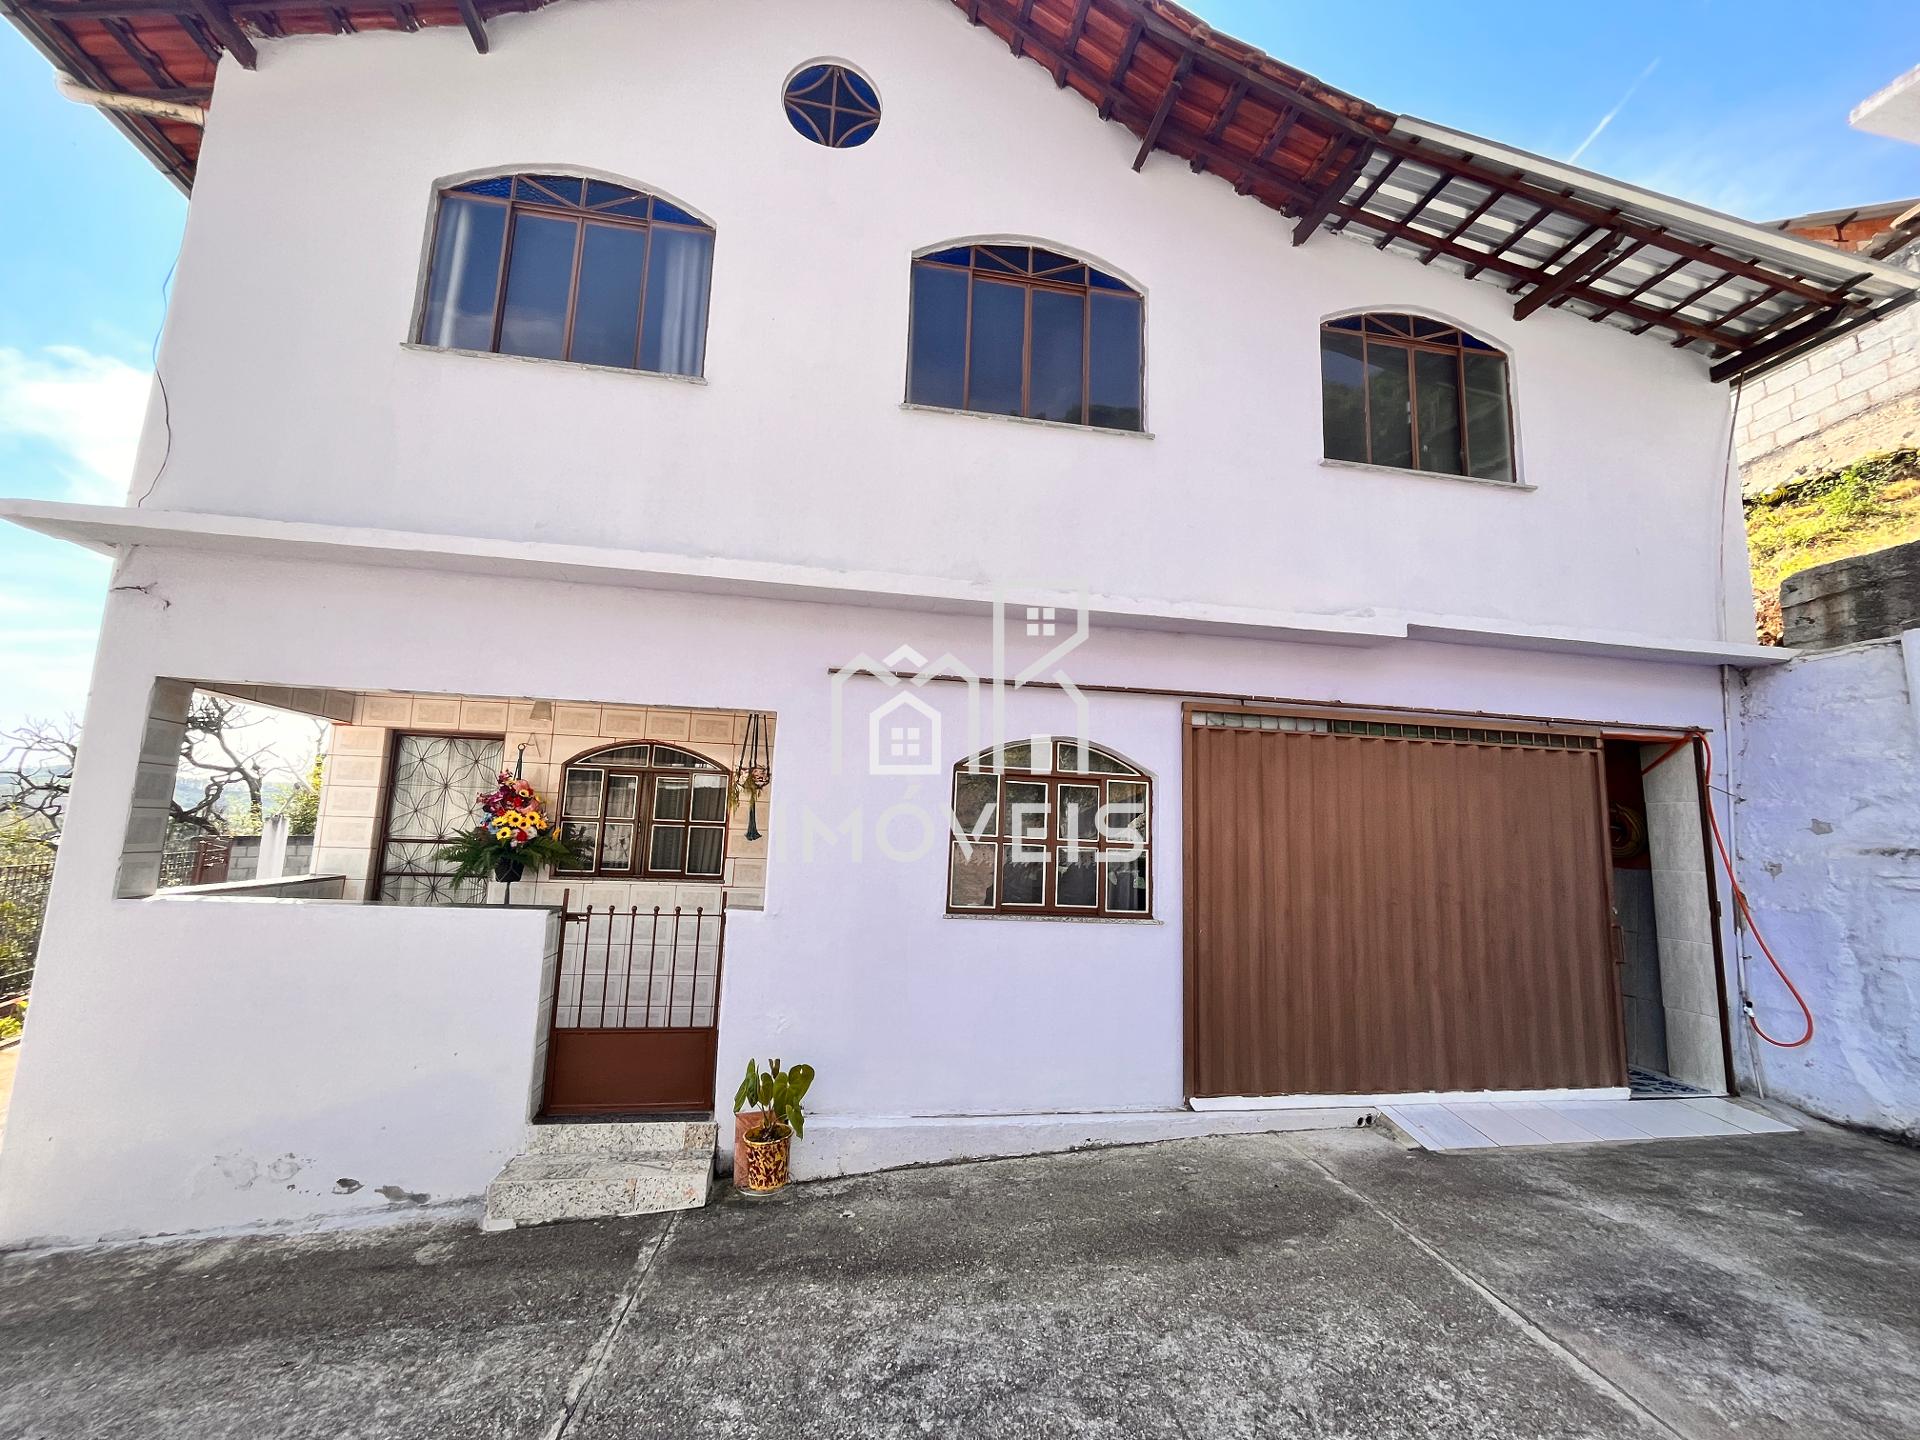 Casa à venda em ANTONIO CARLOS-MG com 3 dormitórios, sendo 1 s...